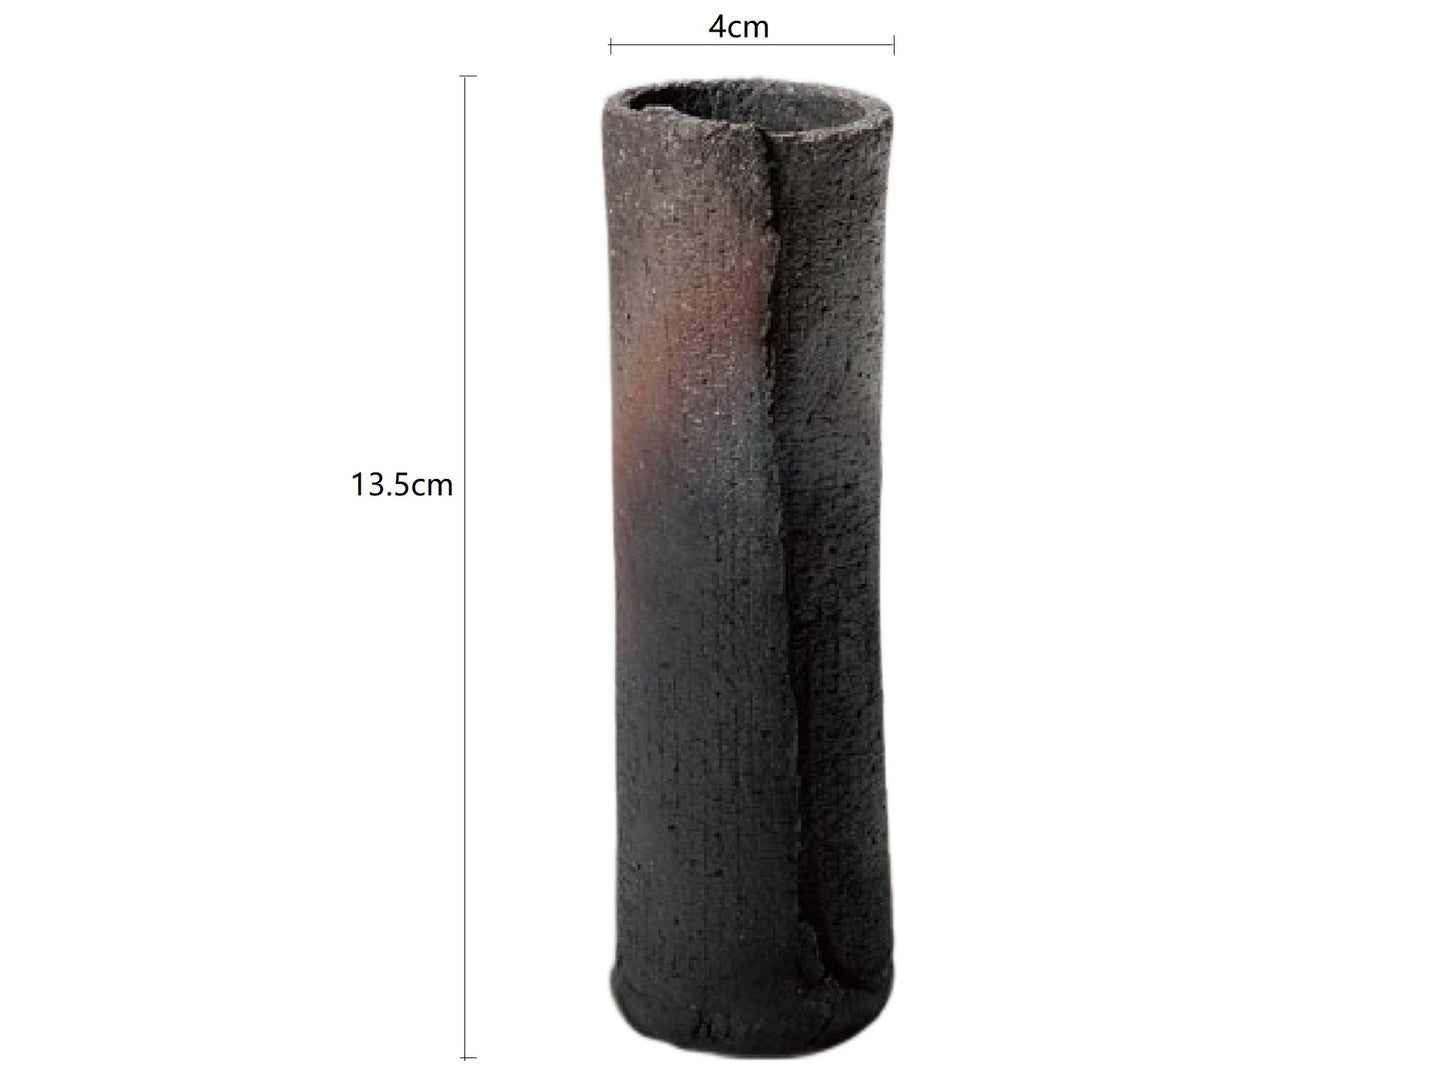 SP3023149 Black Cylinder Handmade Vase 4*13.5cm